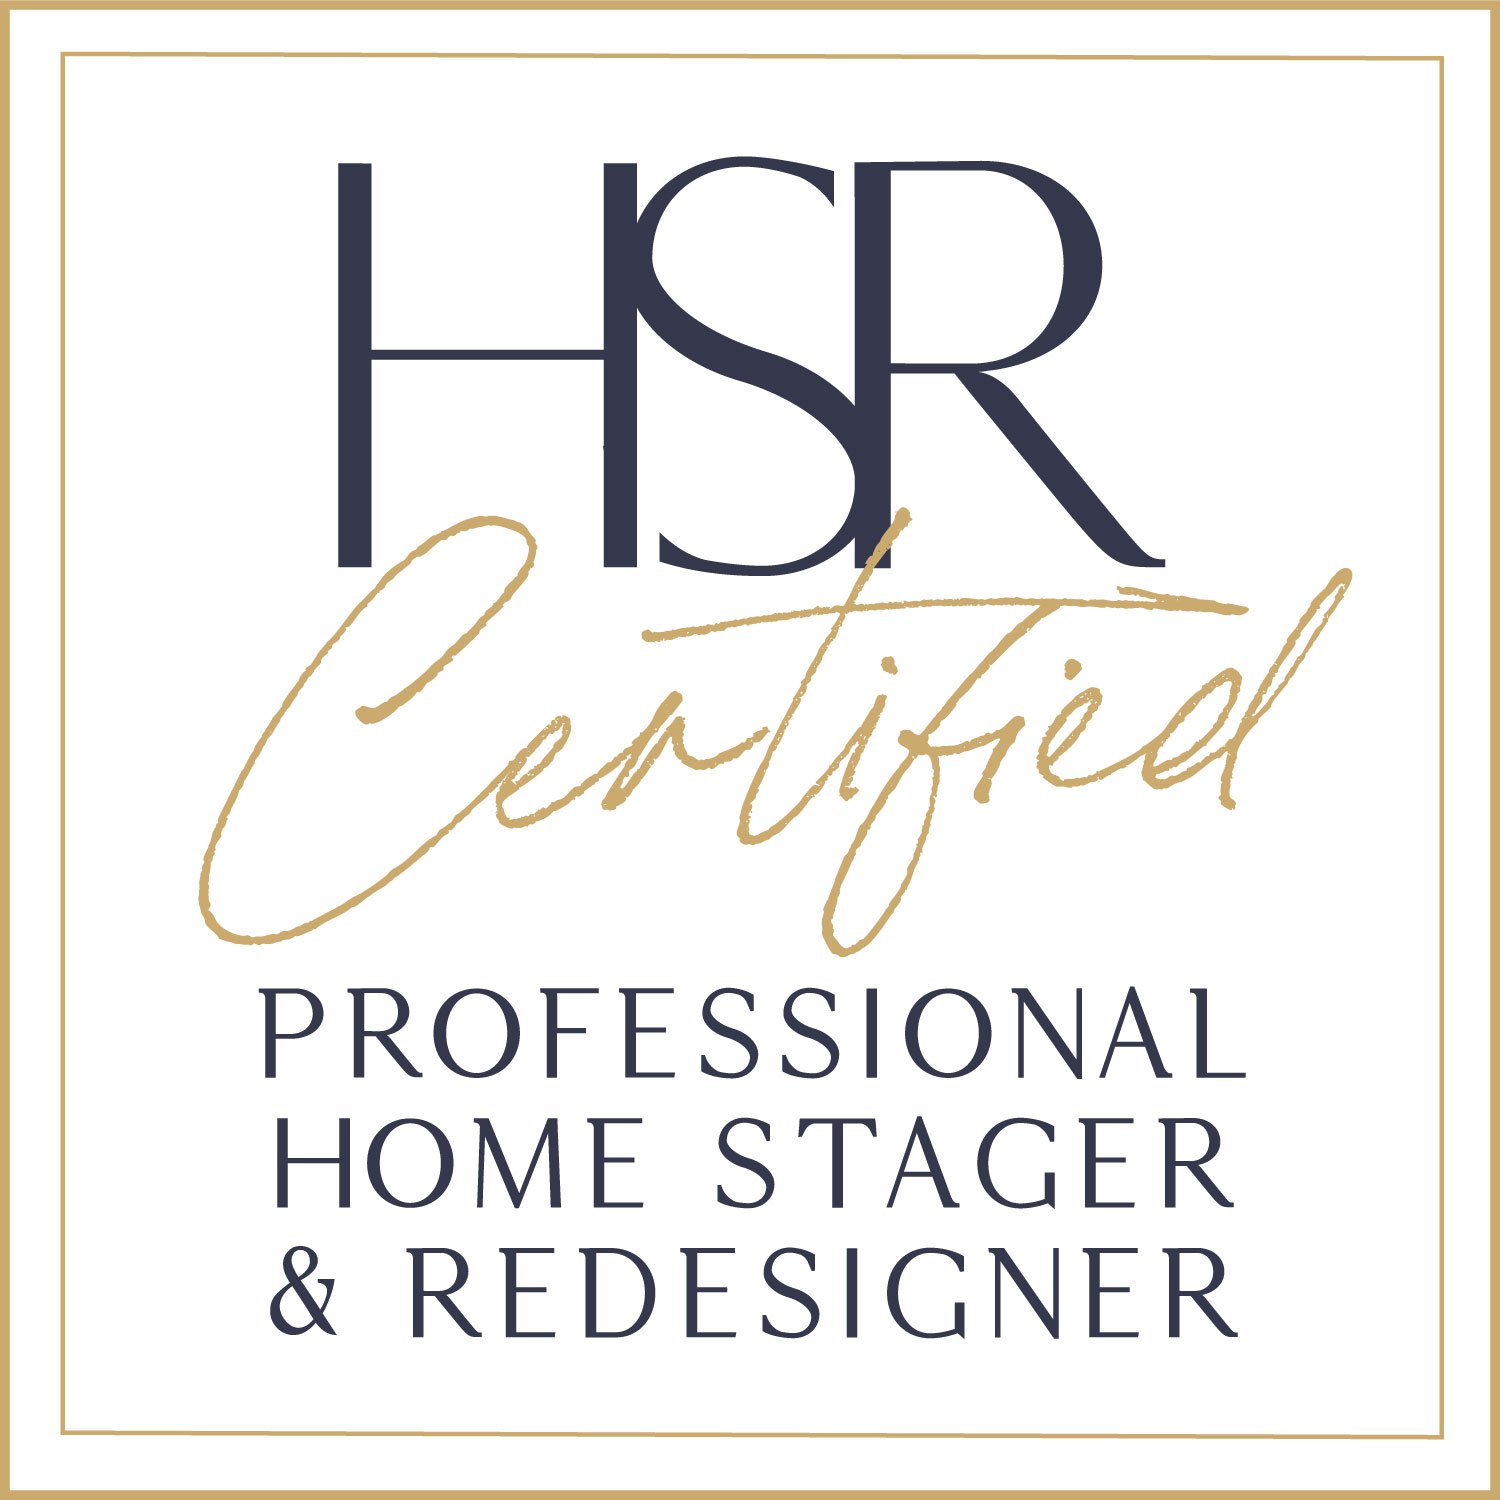 HSR_squareoriginal - logo